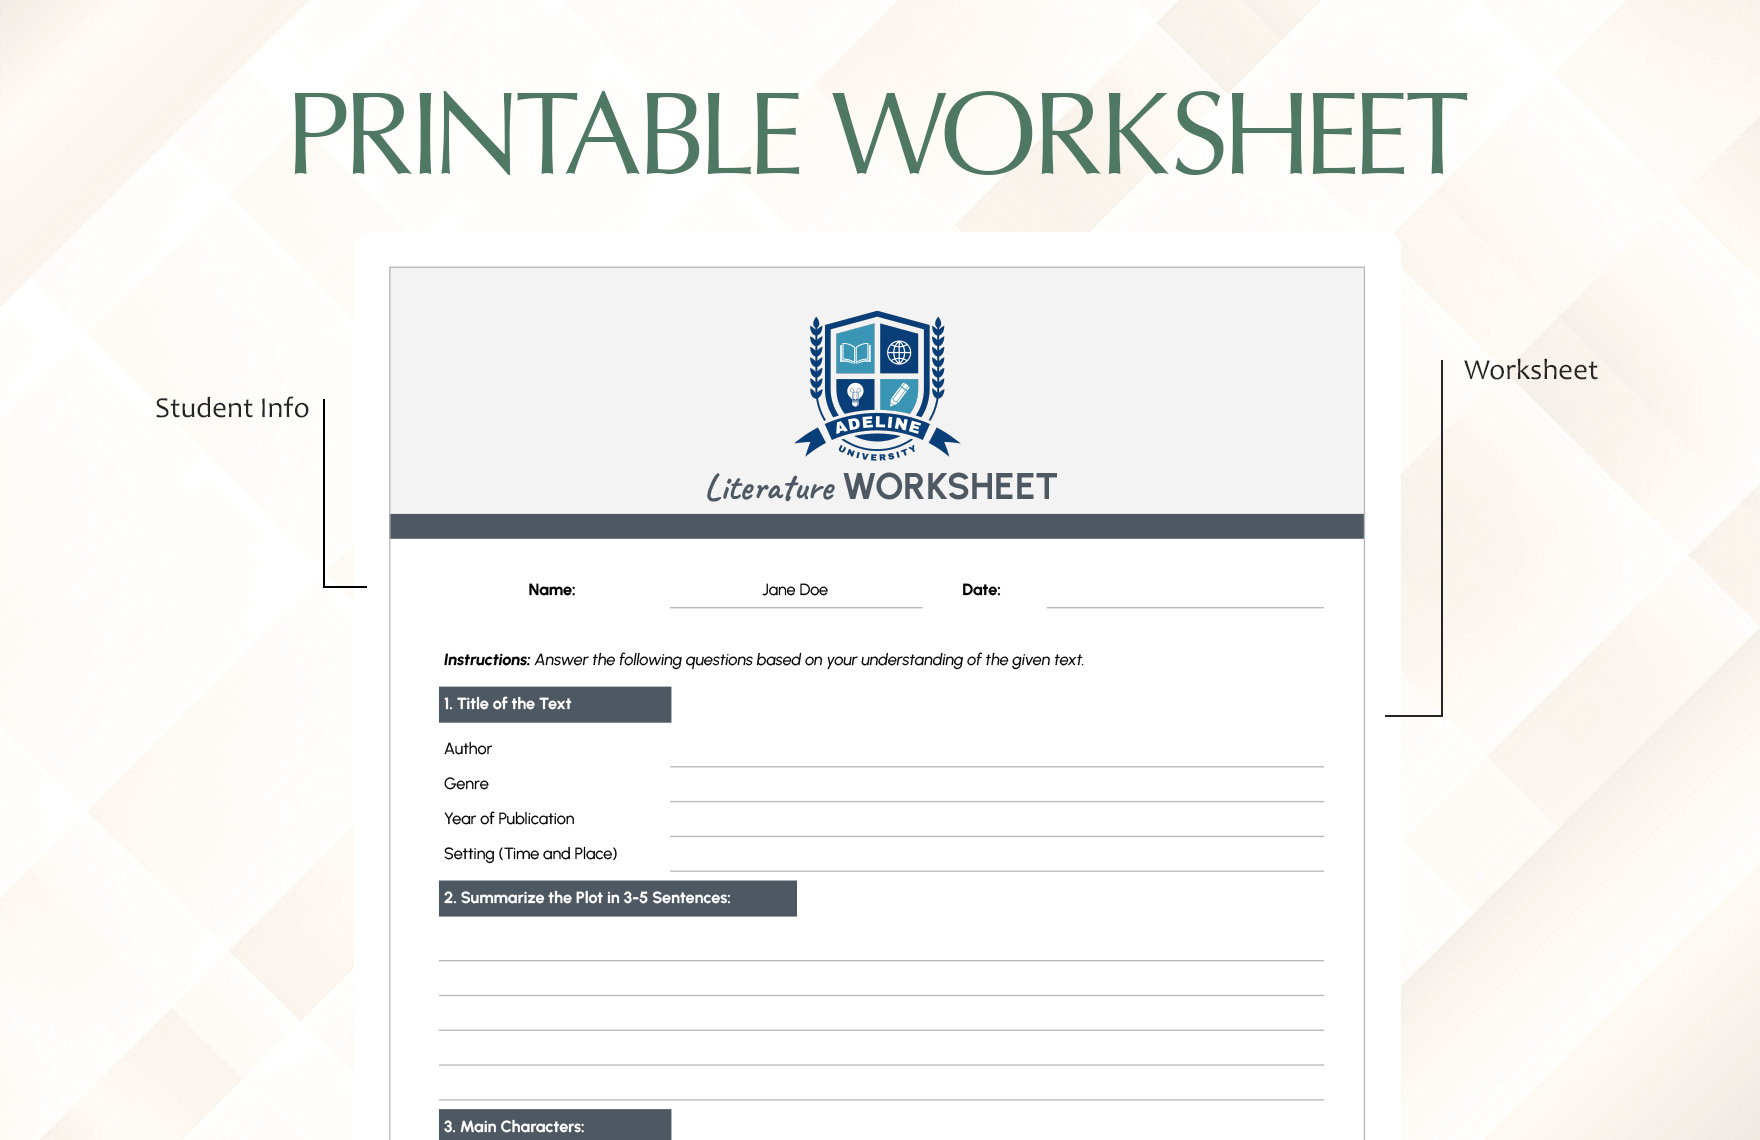 Printable Worksheet Template